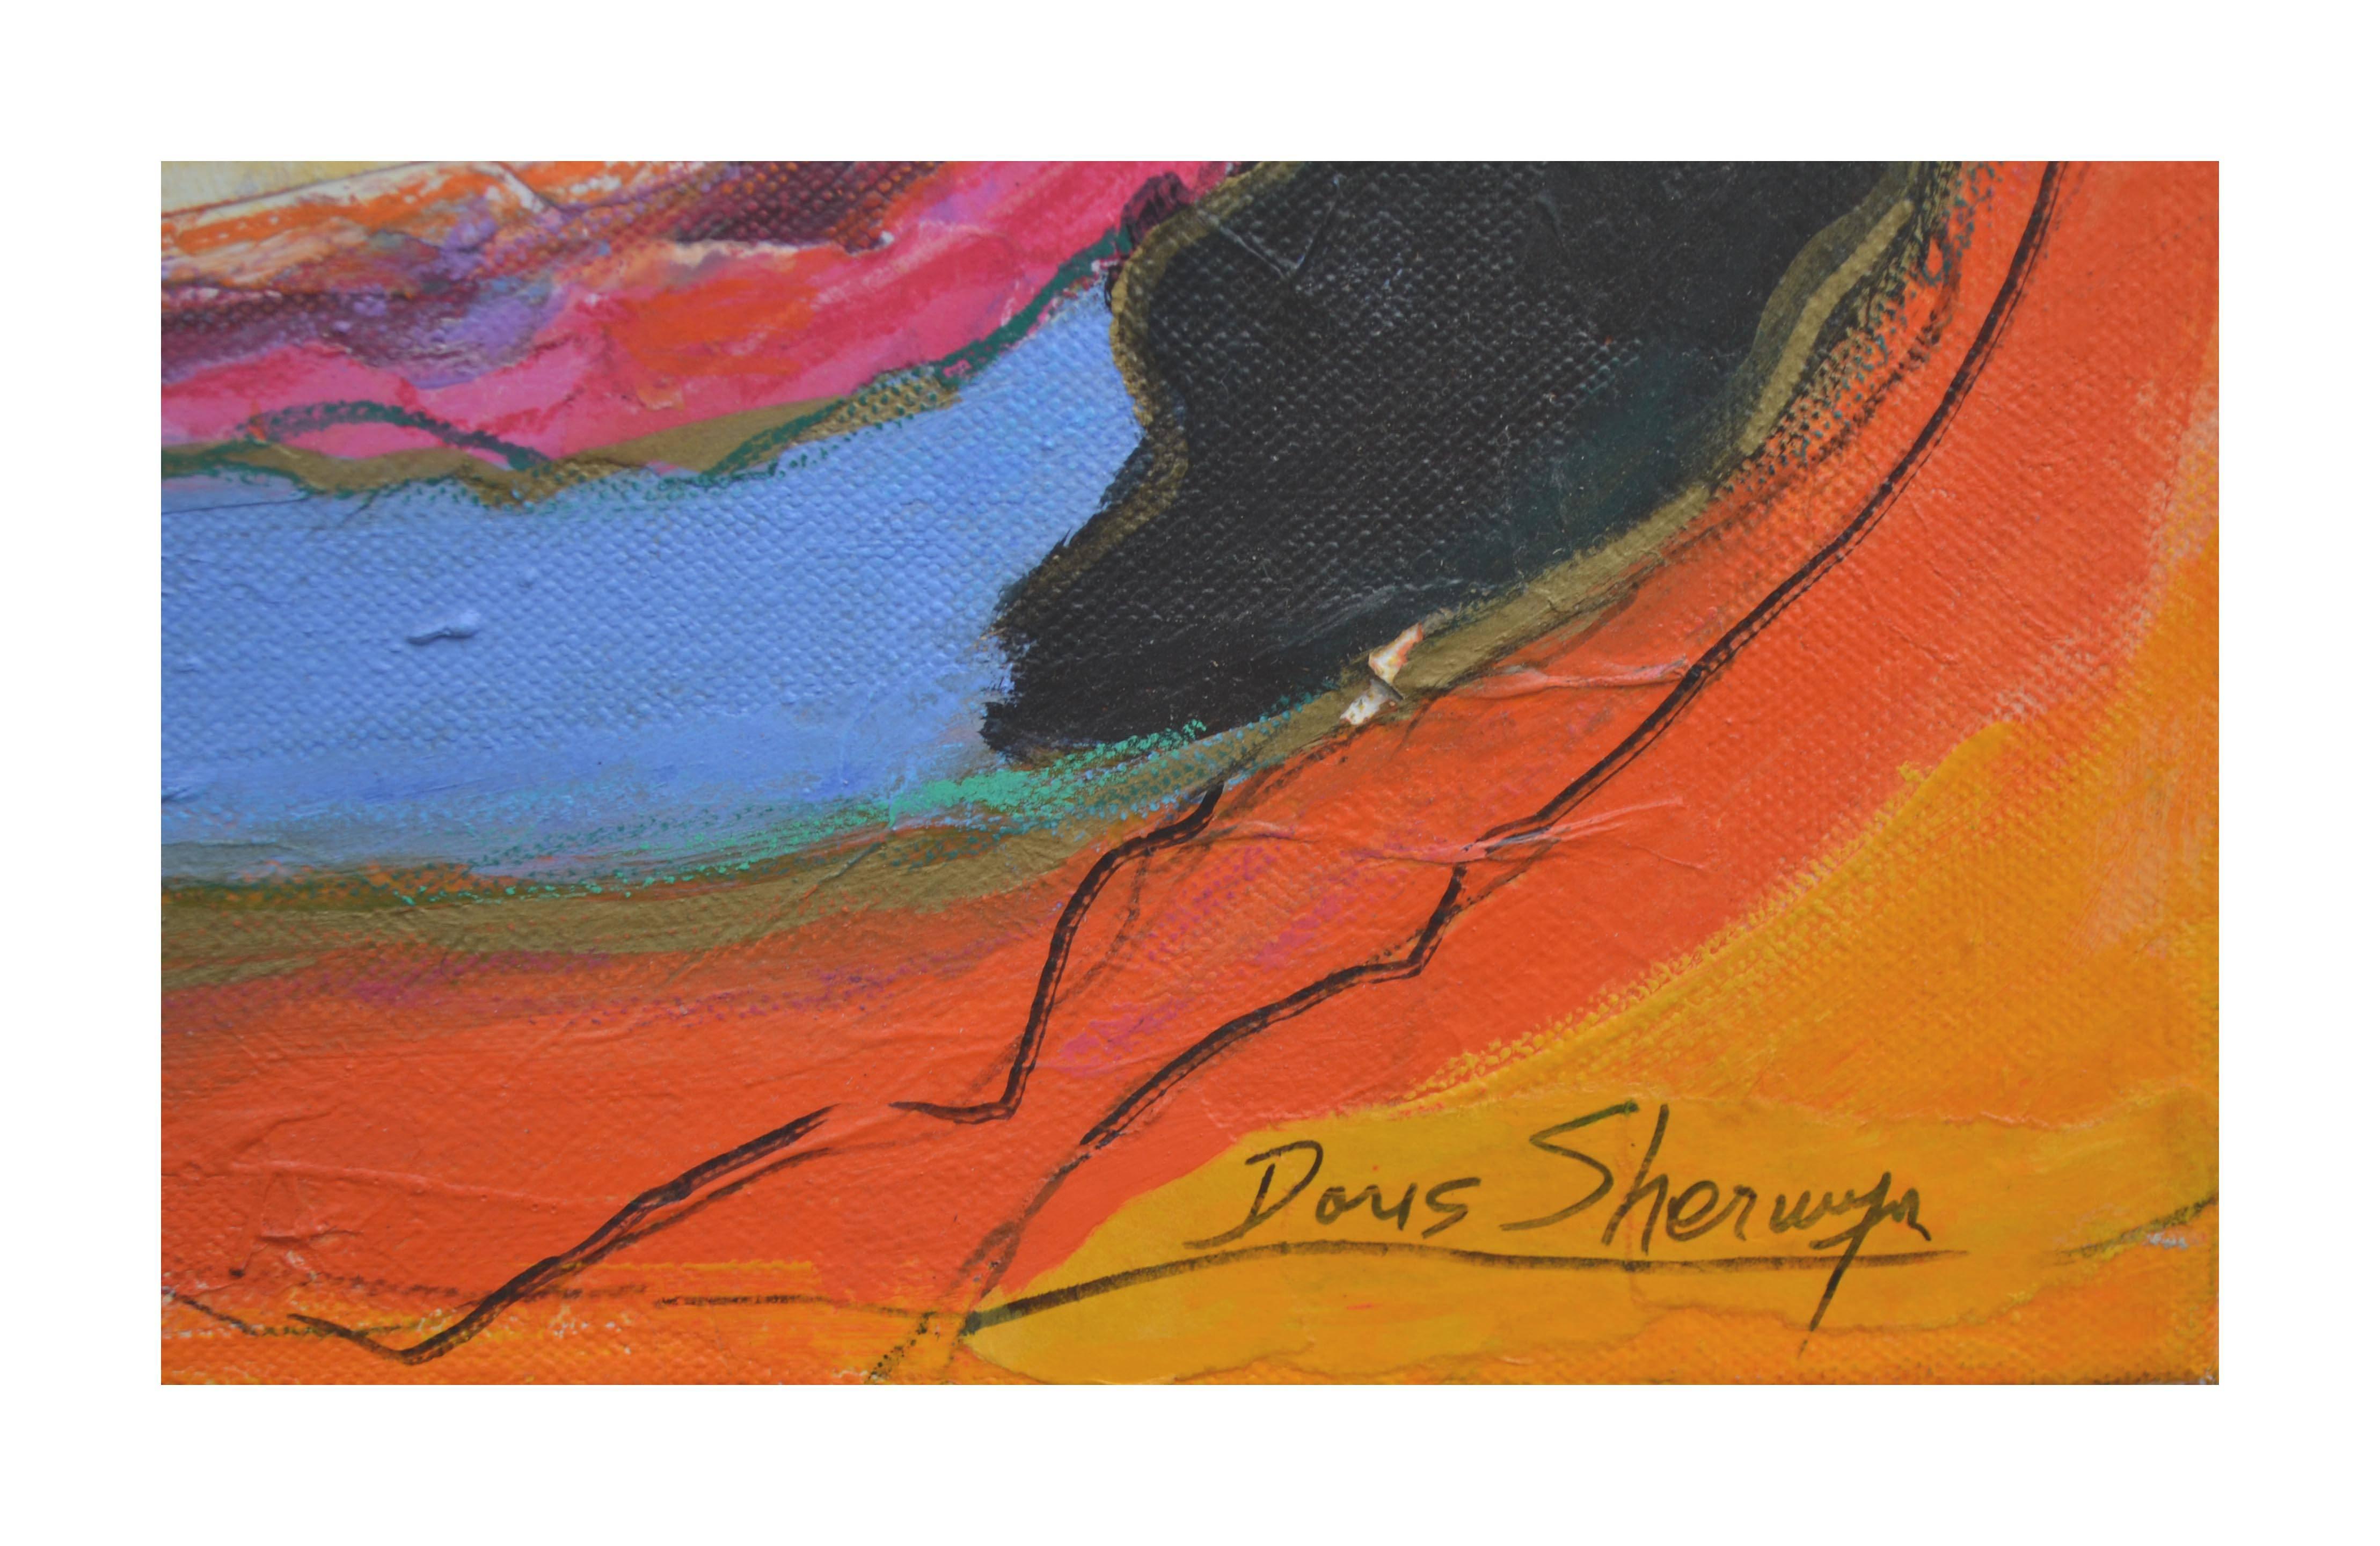 Dramatische und lebendige abstrakte Mischtechnik der kalifornischen Künstlerin Doris Sherwyn (Amerikanerin, 1927-2015). Signiert unten rechts 